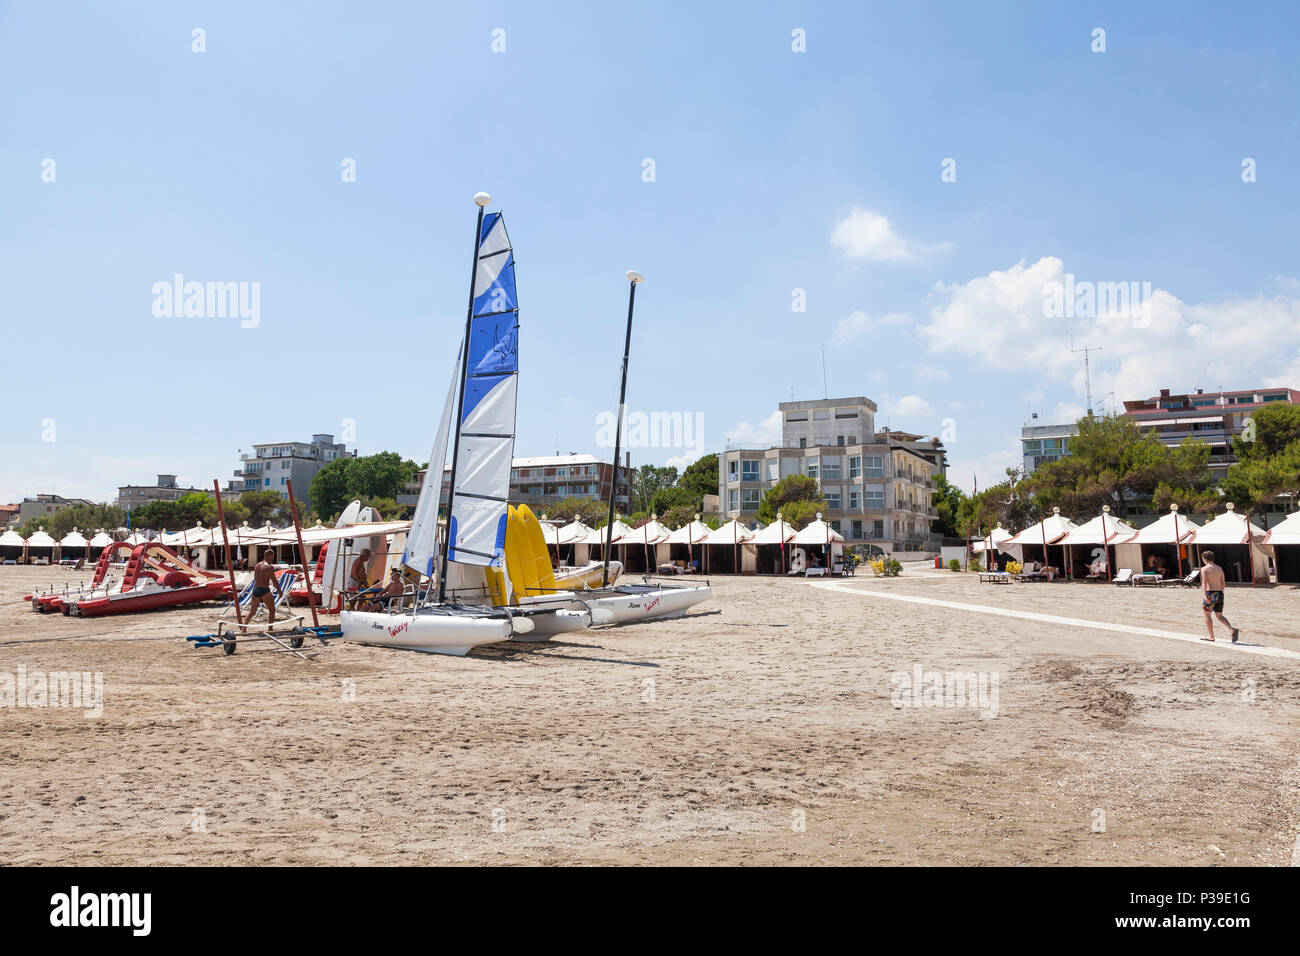 Freizeit Boote und Surfbretter zu mieten an einem Sandstrand, Lido di Venezia, Venedig, Venetien, Italien Stockfoto